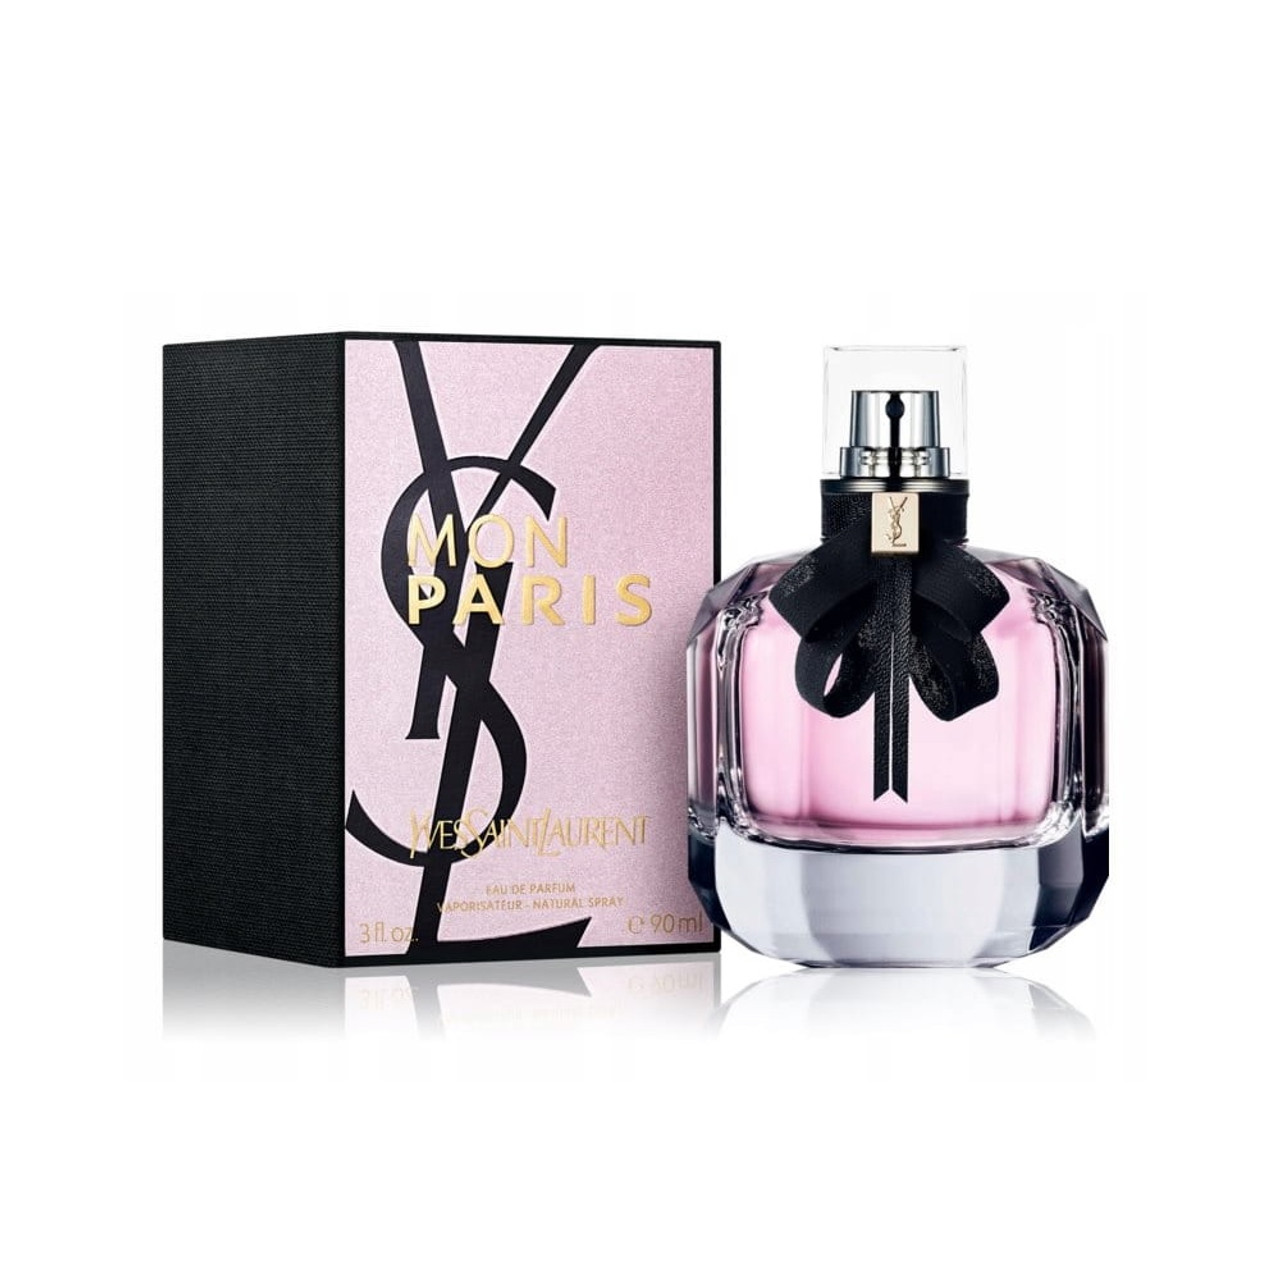 Mon Paris by Yves Saint Laurent 3.0 Oz / 90ml Eau de Parfum for